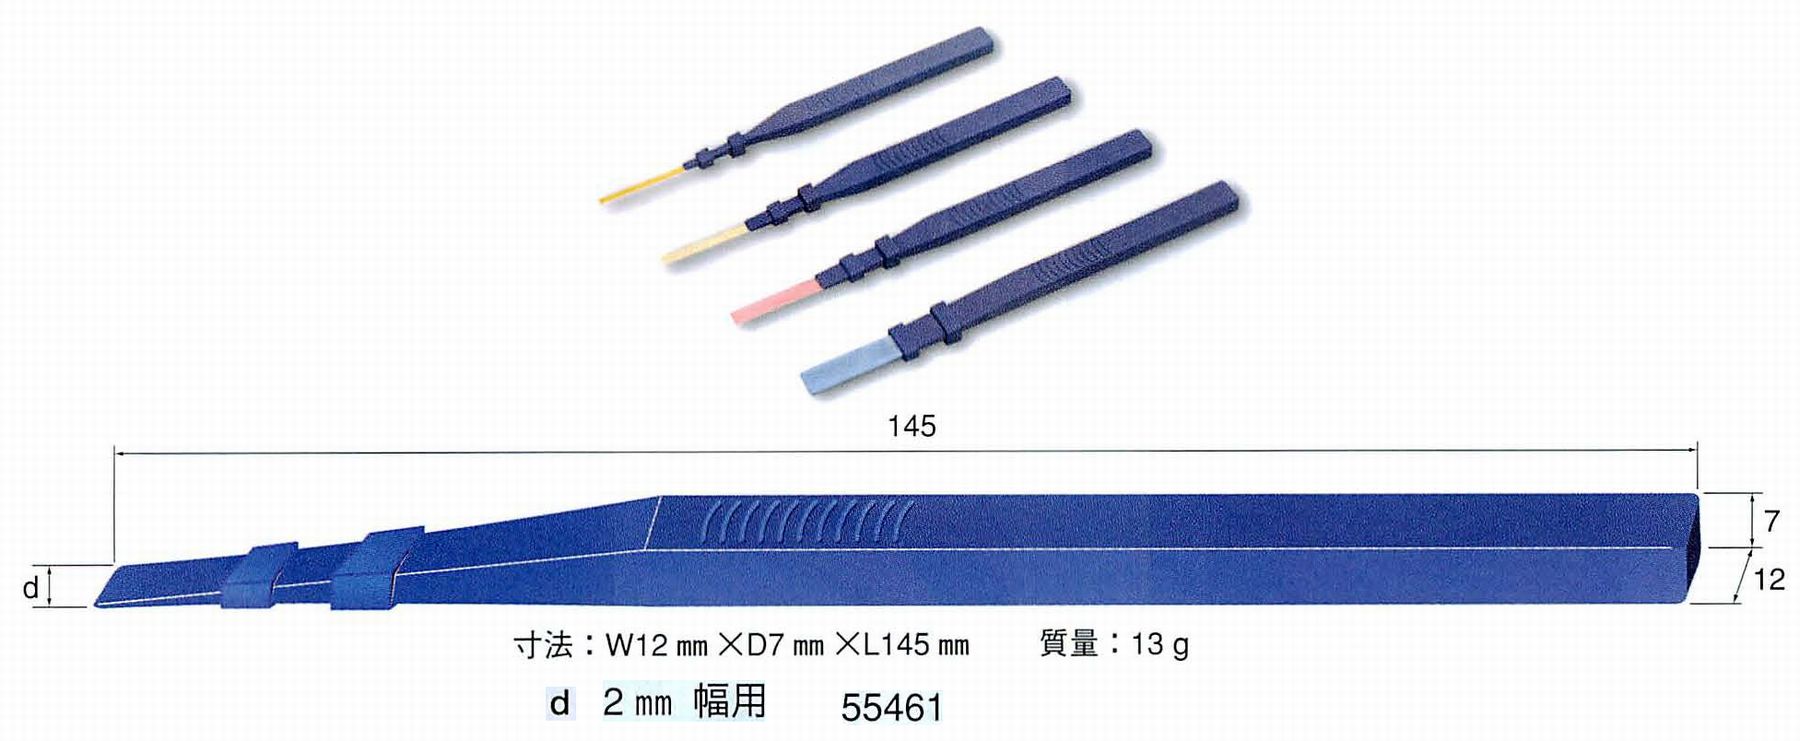 ナカニシ/NAKANISHI セラファイバー 専用ハンドホルダ 2mm幅用 55461